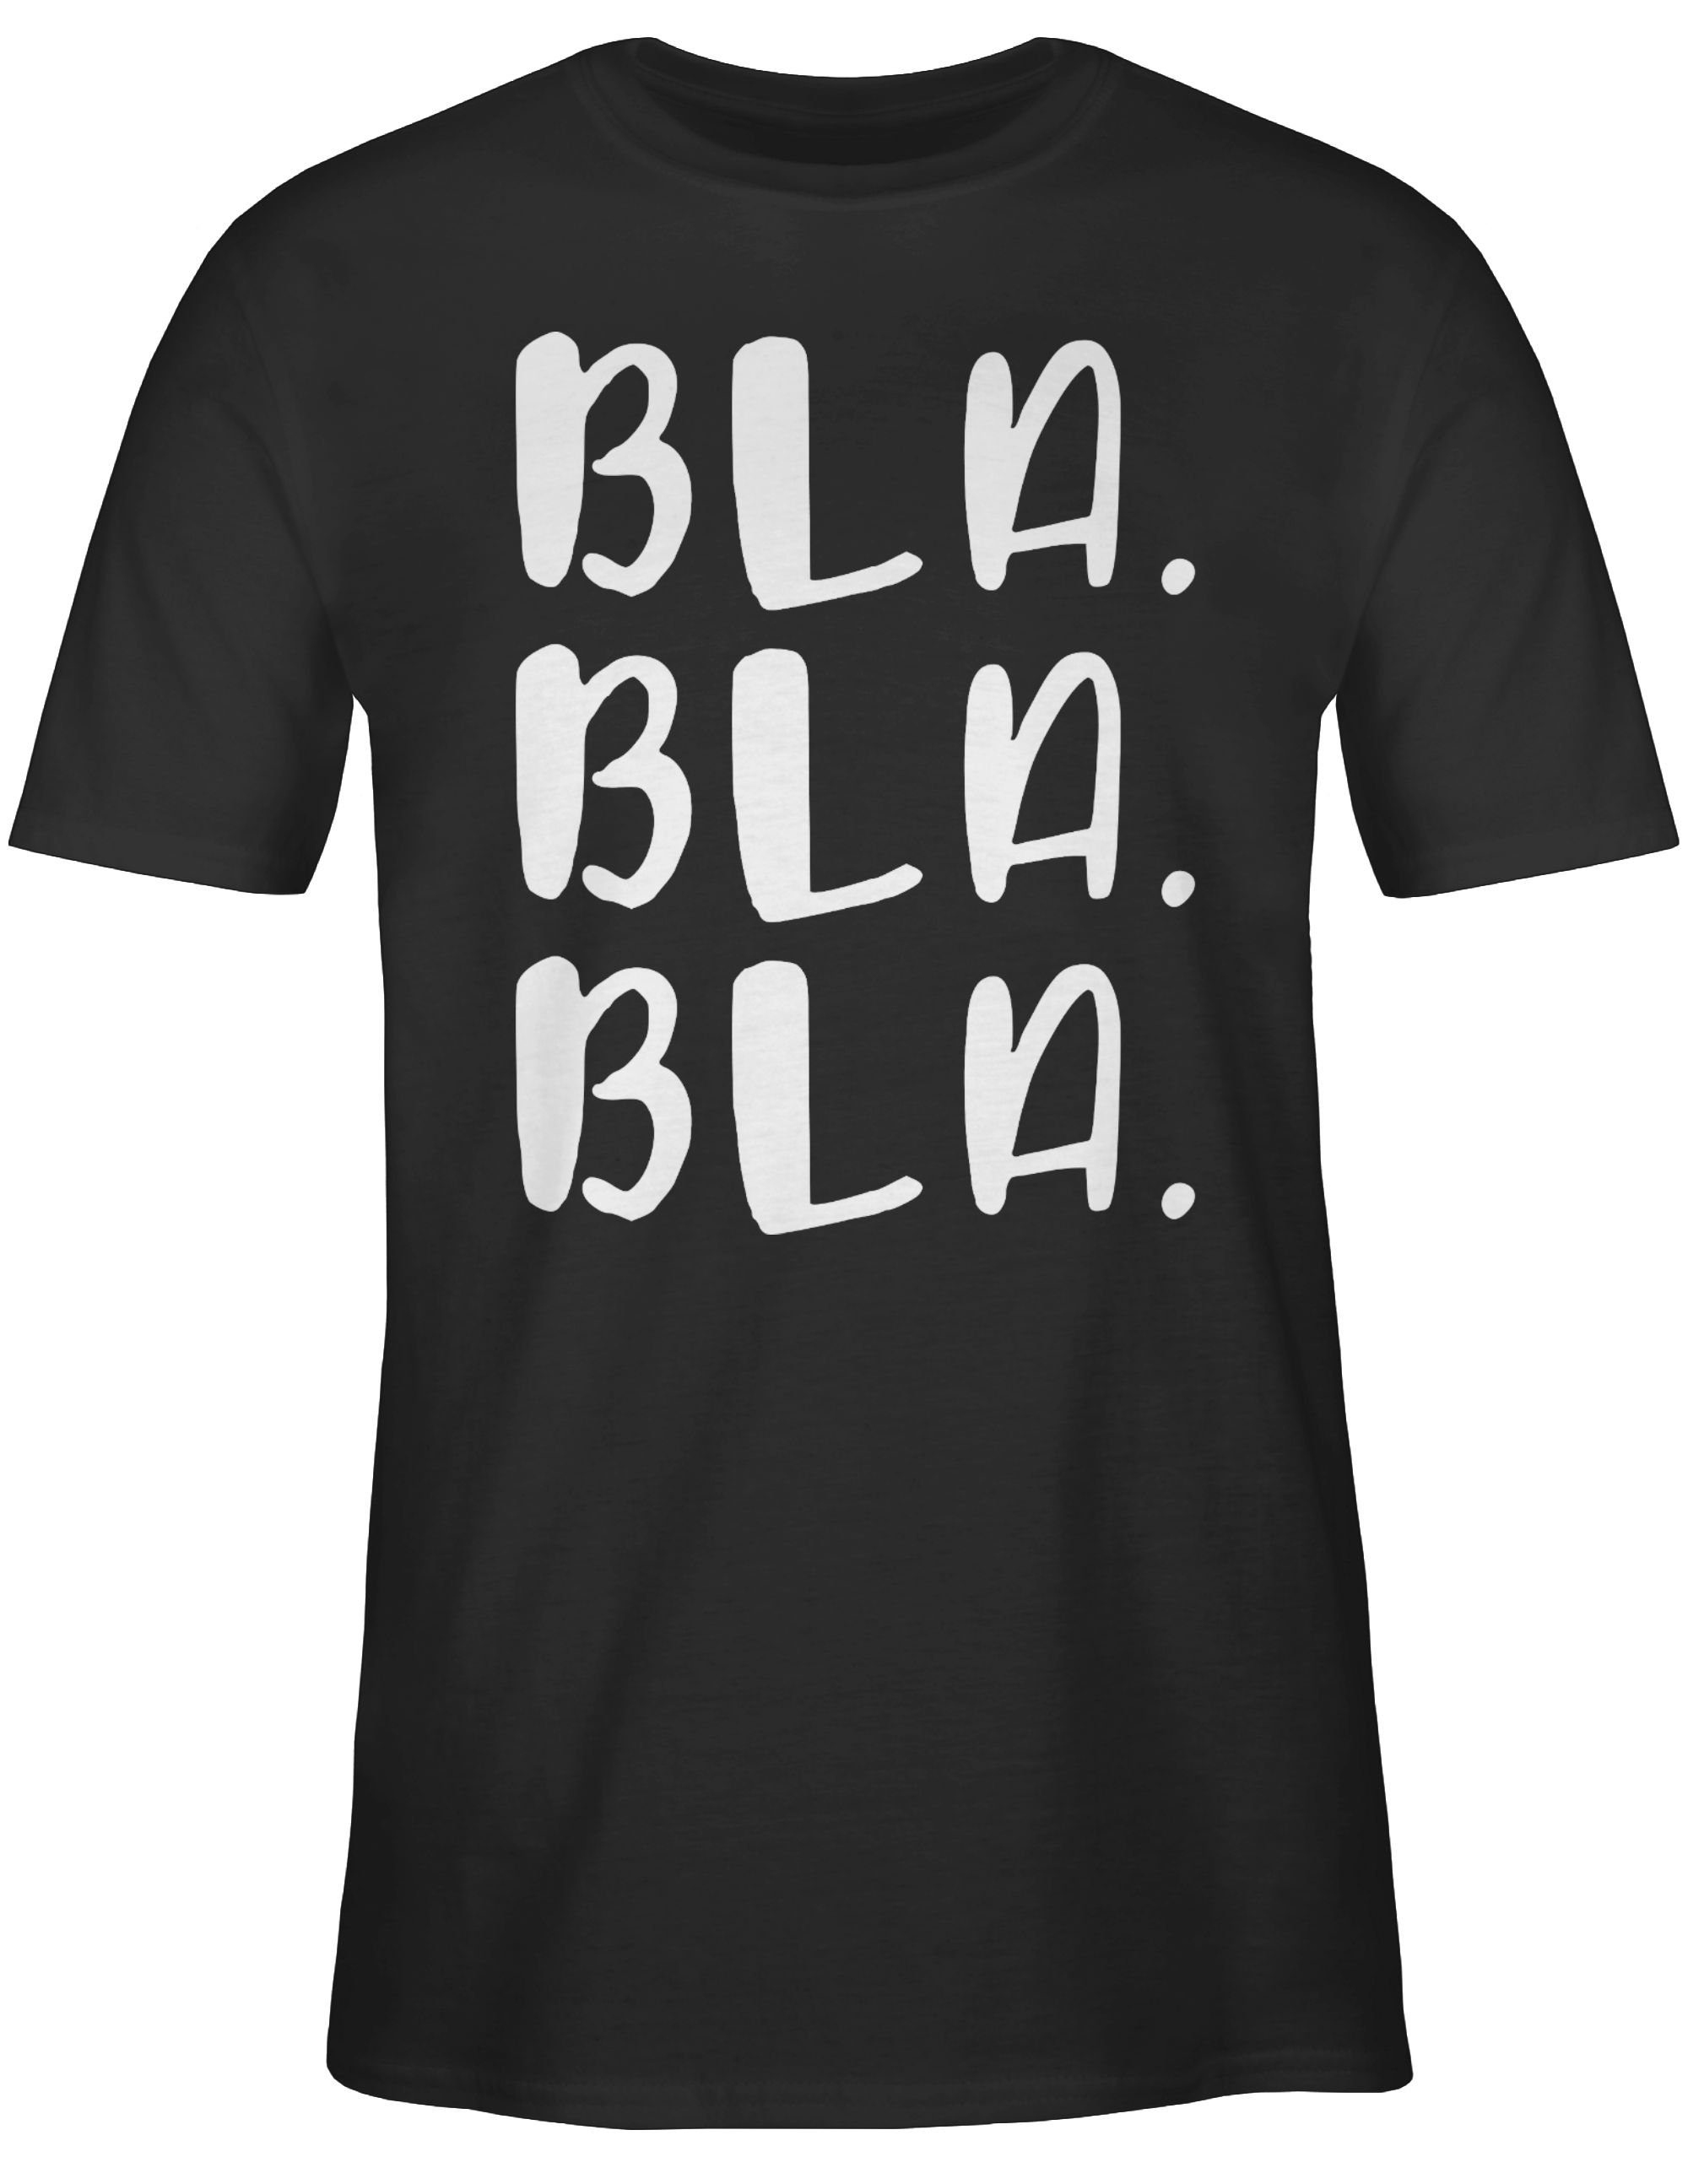 T-Shirt Bla Bla mit Statement Bla 01 Shirtracer Spruch Schwarz Sprüche - weiß